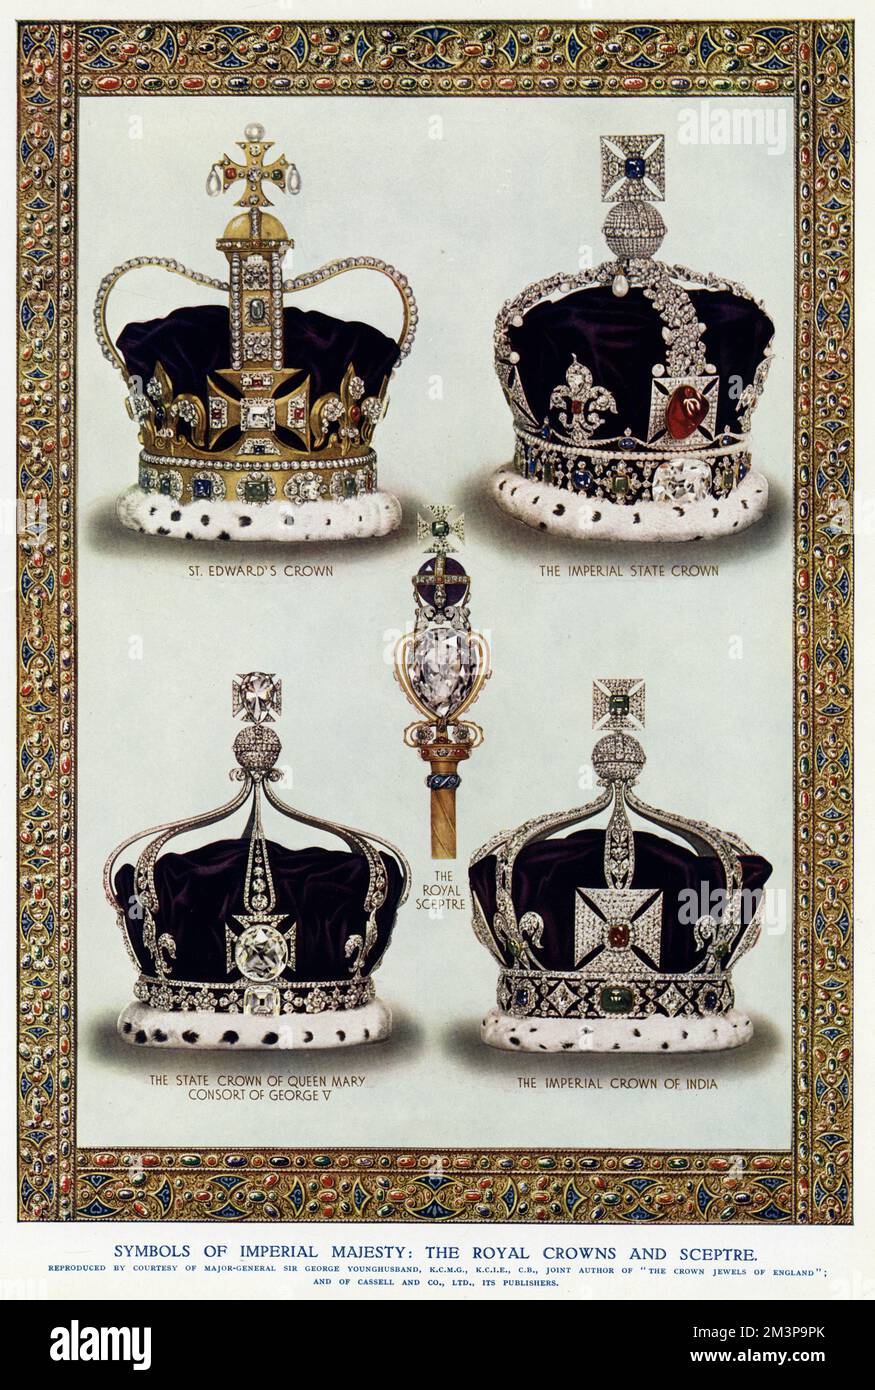 Symbole der Kaiserlichen Majestät: Die Krone St. Edward mit 444 Edelsteinen ist nach wie vor eines der ranghohen Kronjuwelen des Vereinigten Königreichs und die offizielle Krönungskrone. Imperial State Crown, symbolisiert die Souveränität des Monarchen, es gibt seit dem 15.. Jahrhundert mehrere Versionen, ähnlich der der St. Edwards Krone, aber kürzer und mit Juwelen, Edelsteinen, Diamanten, Perlen, Saphiren, Smaragde und Rubine. Staatskrone von Königin Mary, Gemahl von König George V. von England. Die kaiserliche Krone Indiens war die Krone dreier britischer Herrscher als Kaiser Indiens während der Zeit Stockfoto